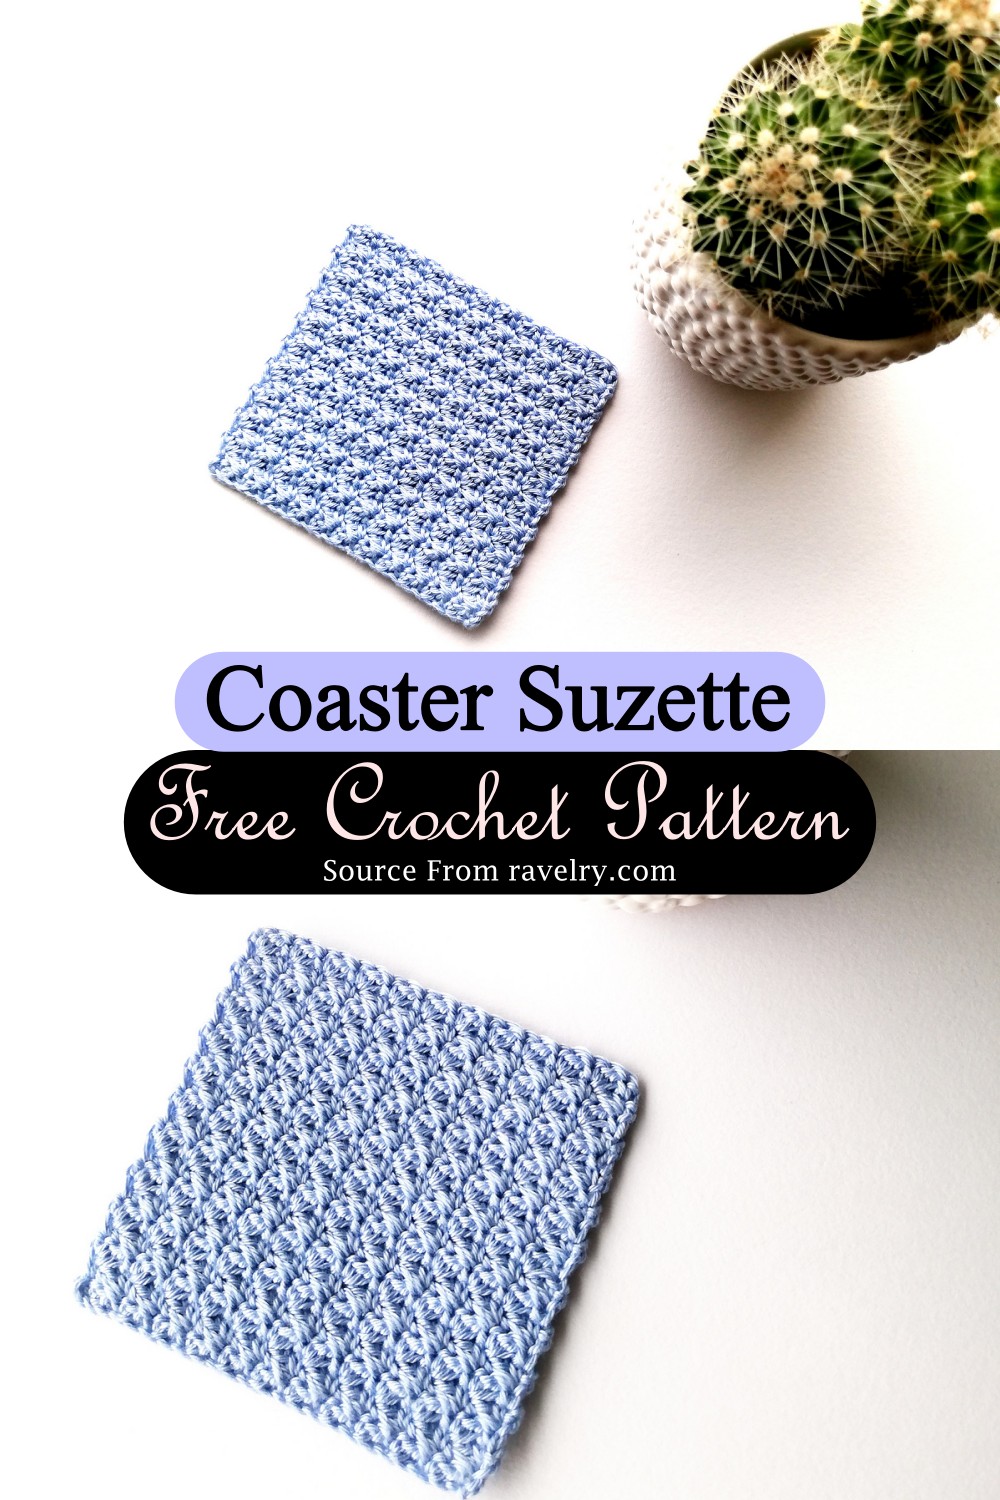 Crochet Coaster Suzette Pattern